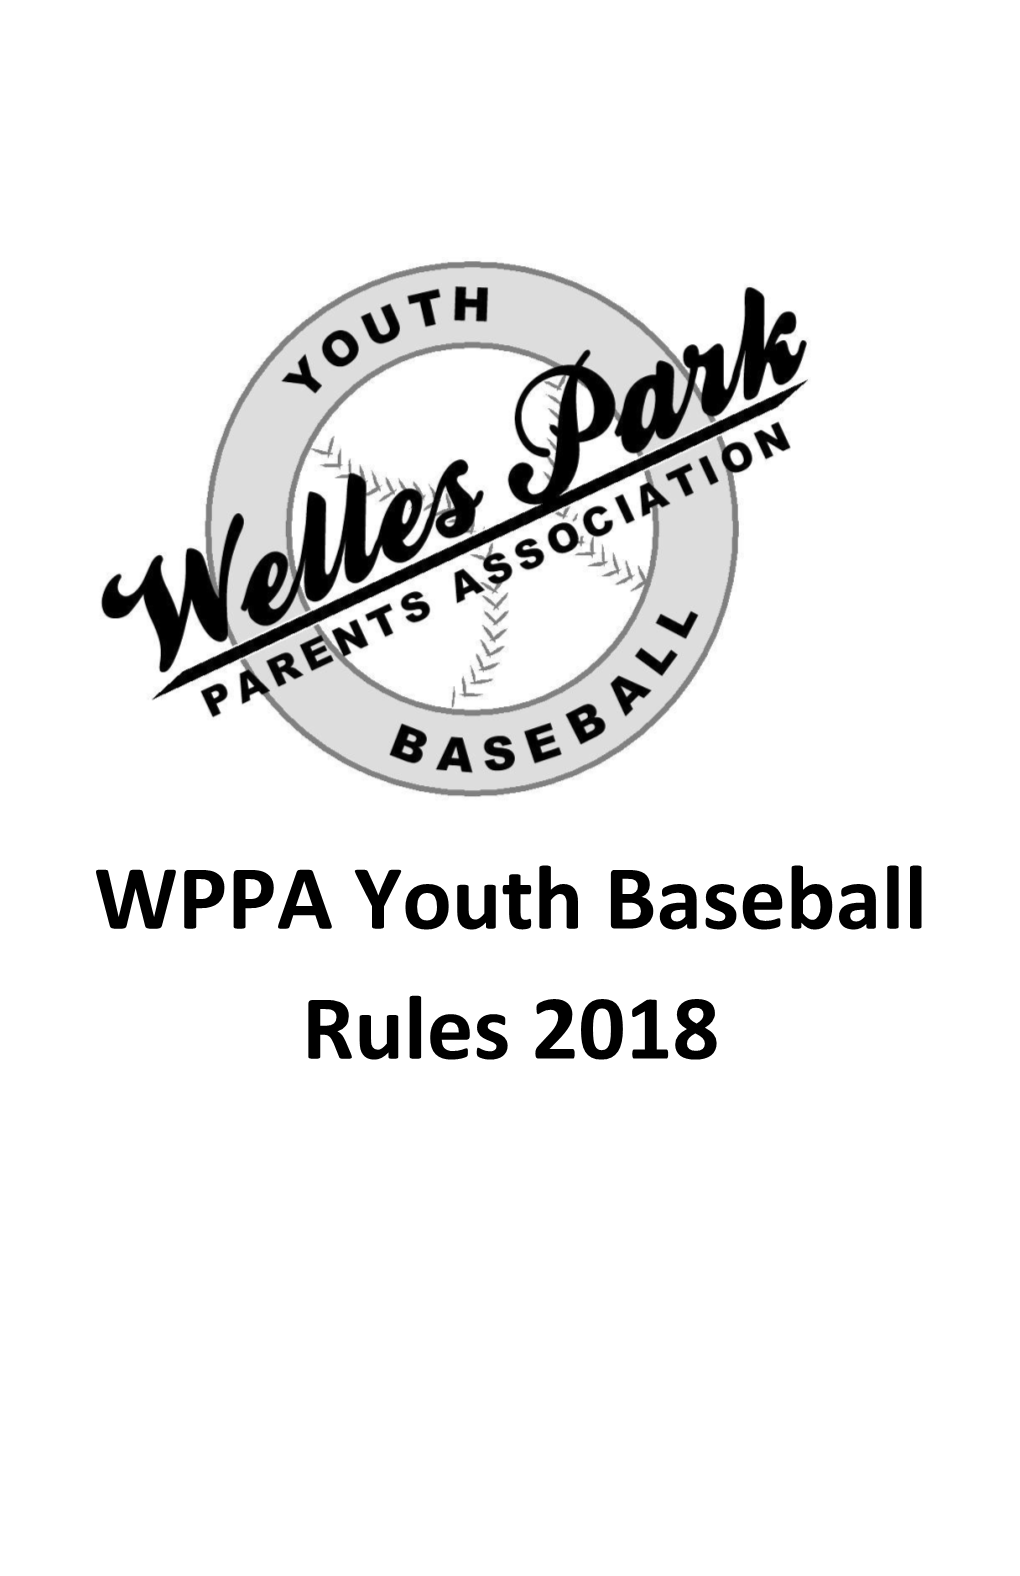 WPPA Youth Baseball Rules 2018